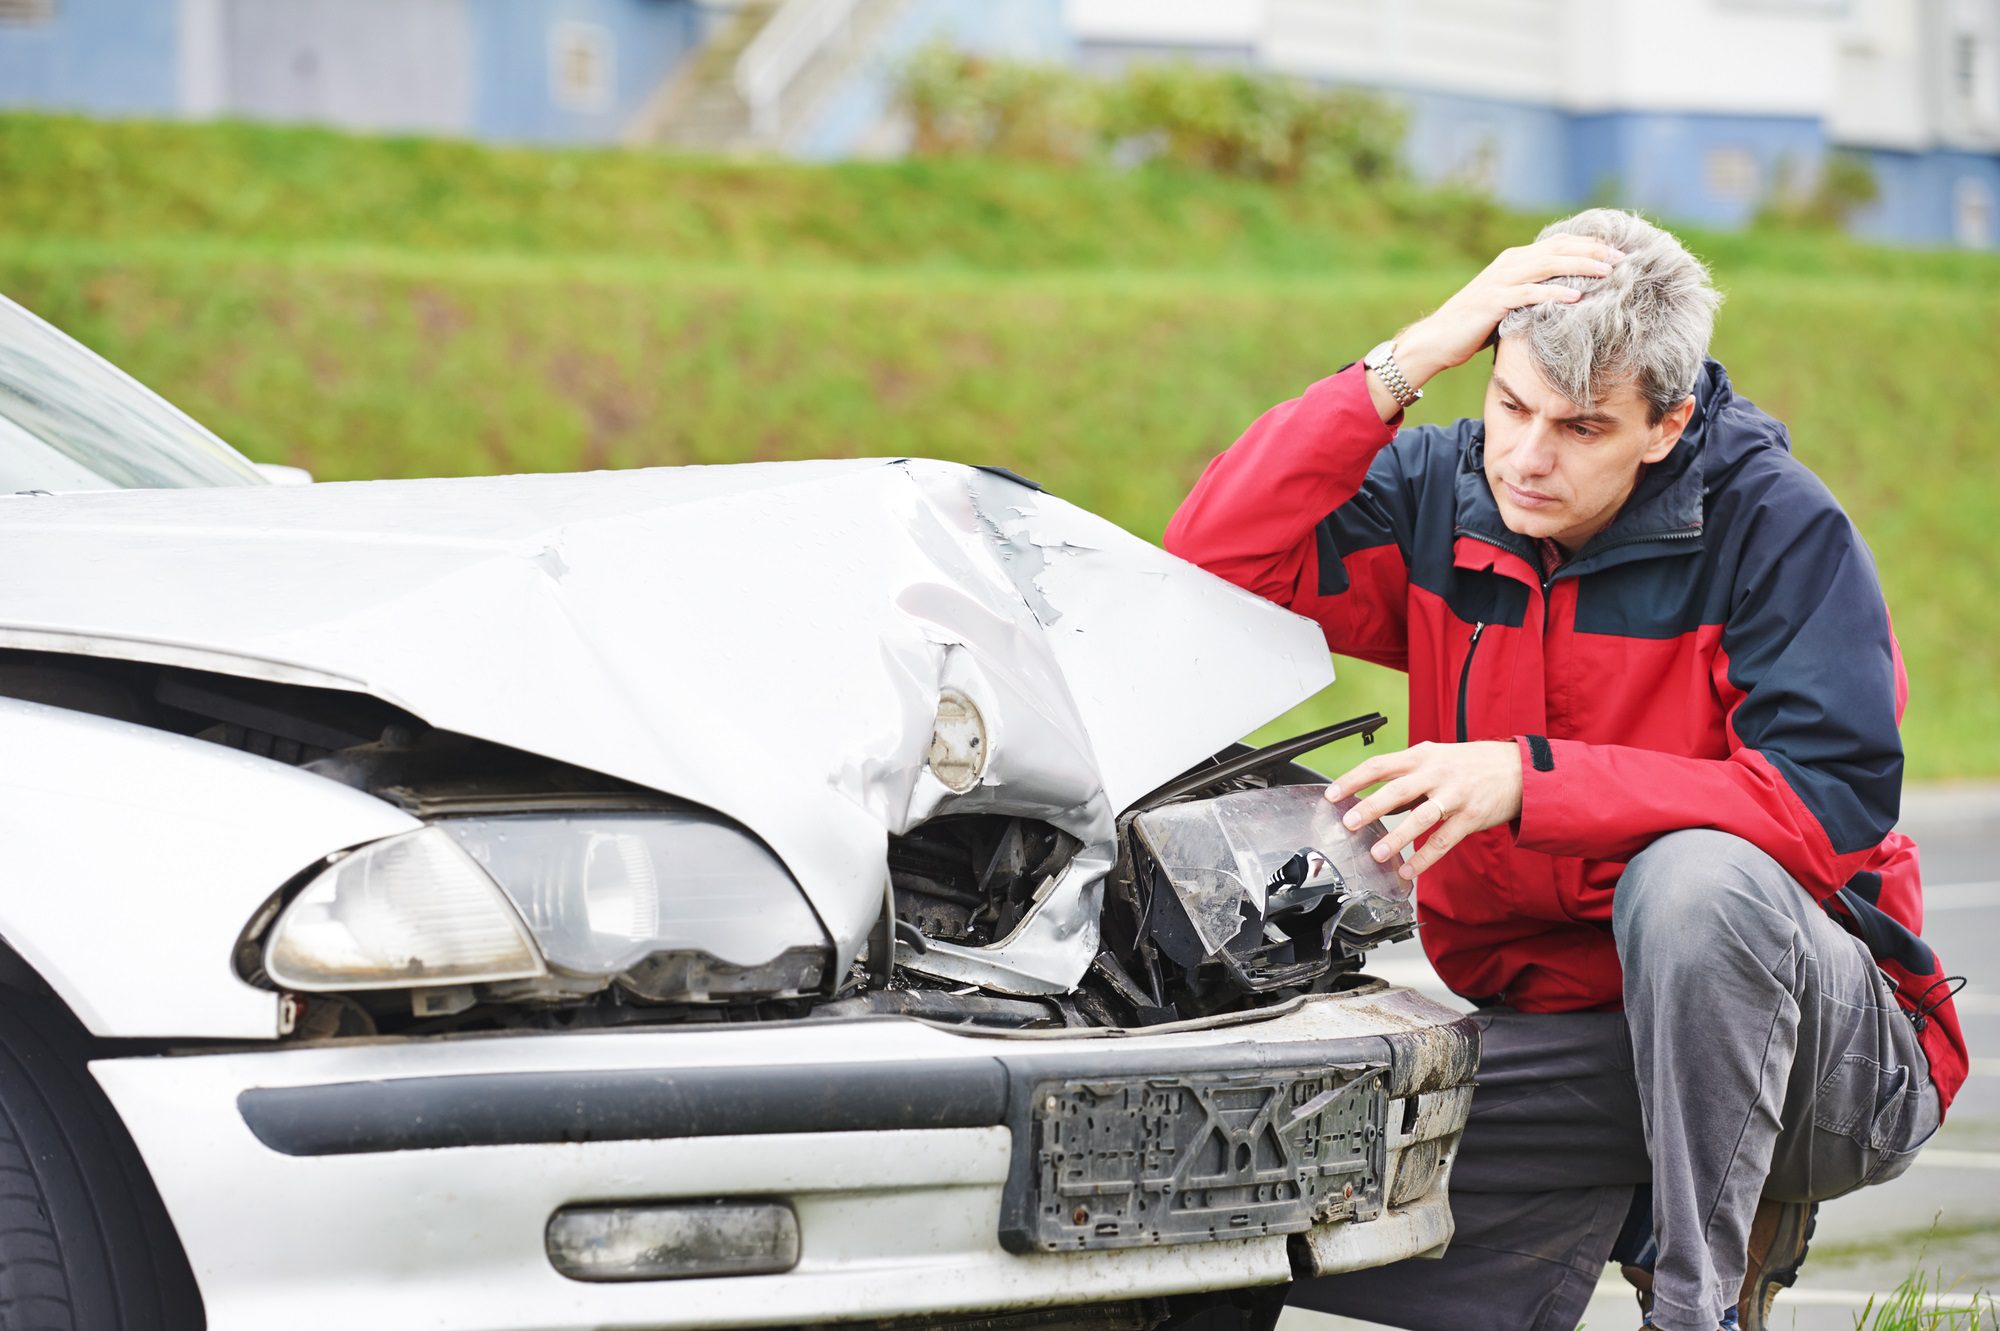 Ein Unfall und damit verbundene Schäden sind immer ärgerlich. Für die Abwicklung und Regulierung des Schadens ist eine Dokumentation per Unfallbericht, Unfallskizze und detaillierten Fotos essentiell.